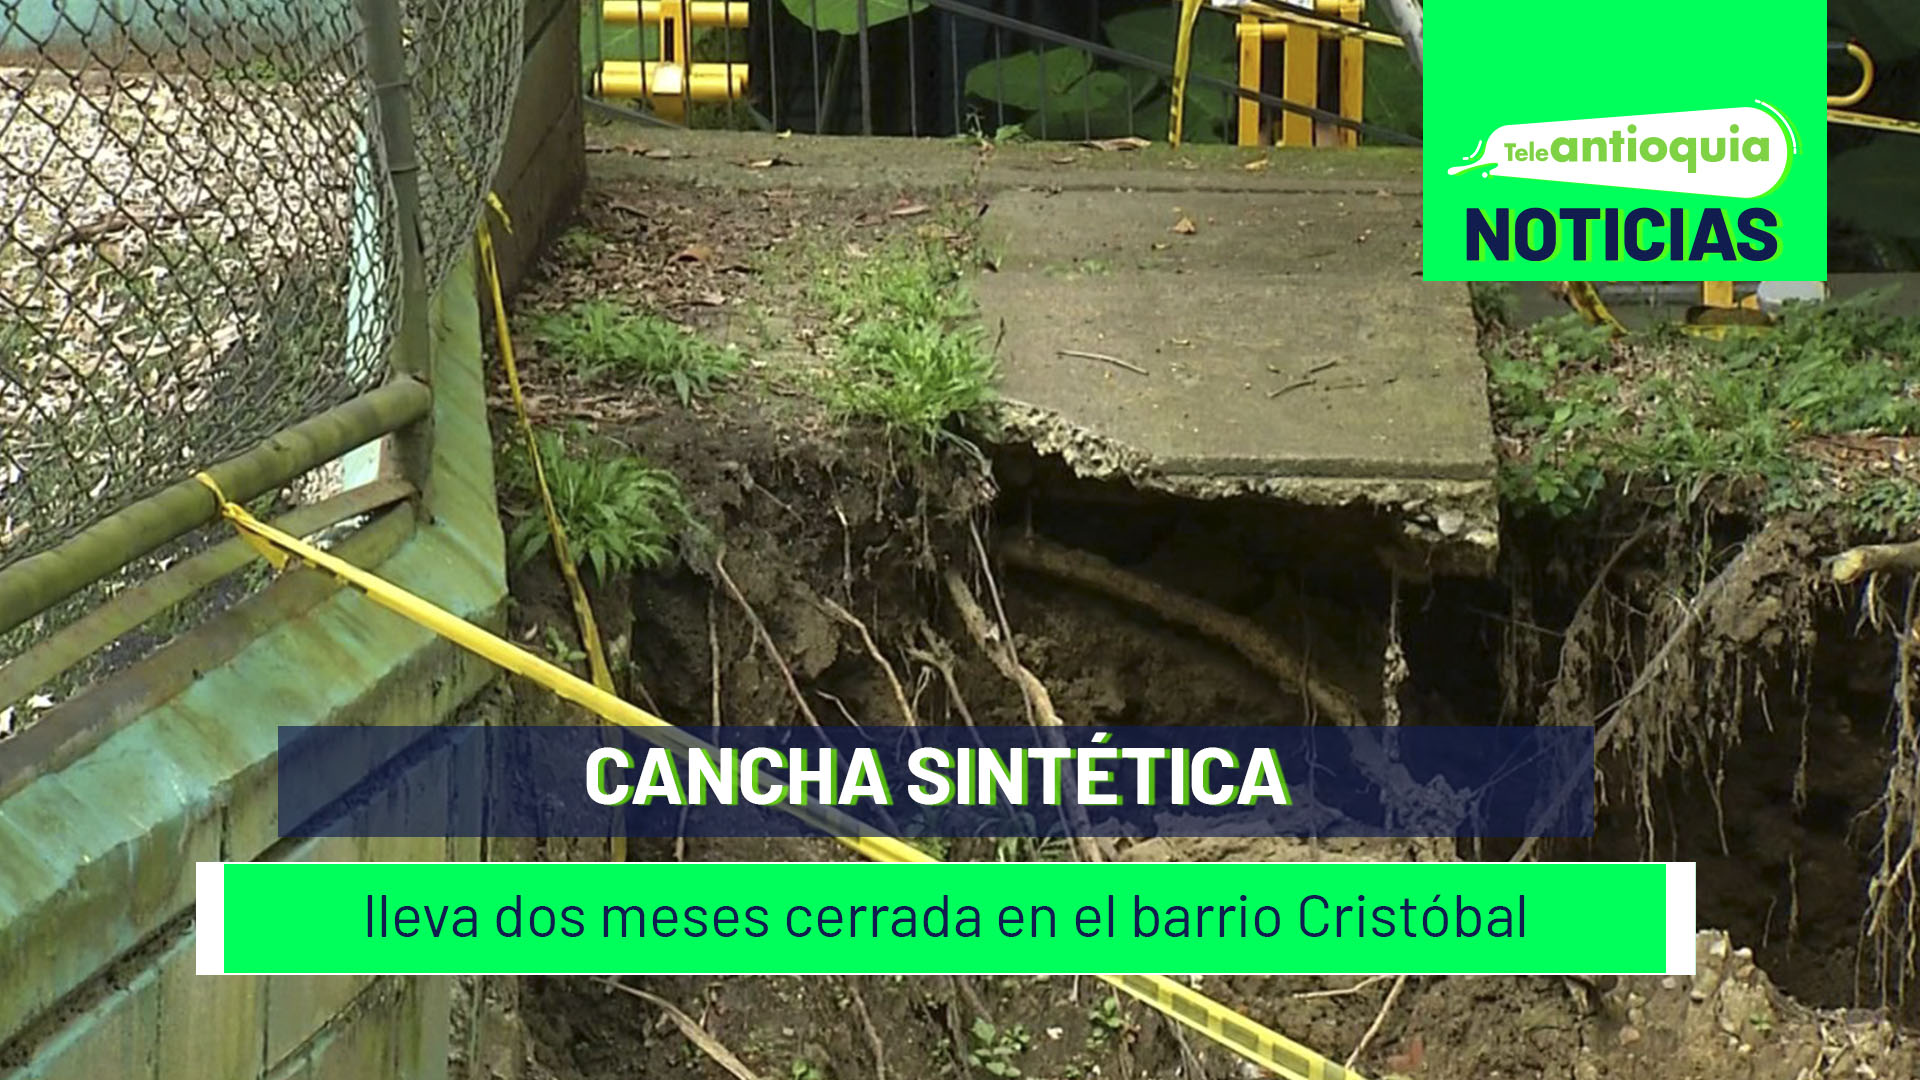 Cancha sintética lleva dos meses cerrada en el barrio Cristóbal